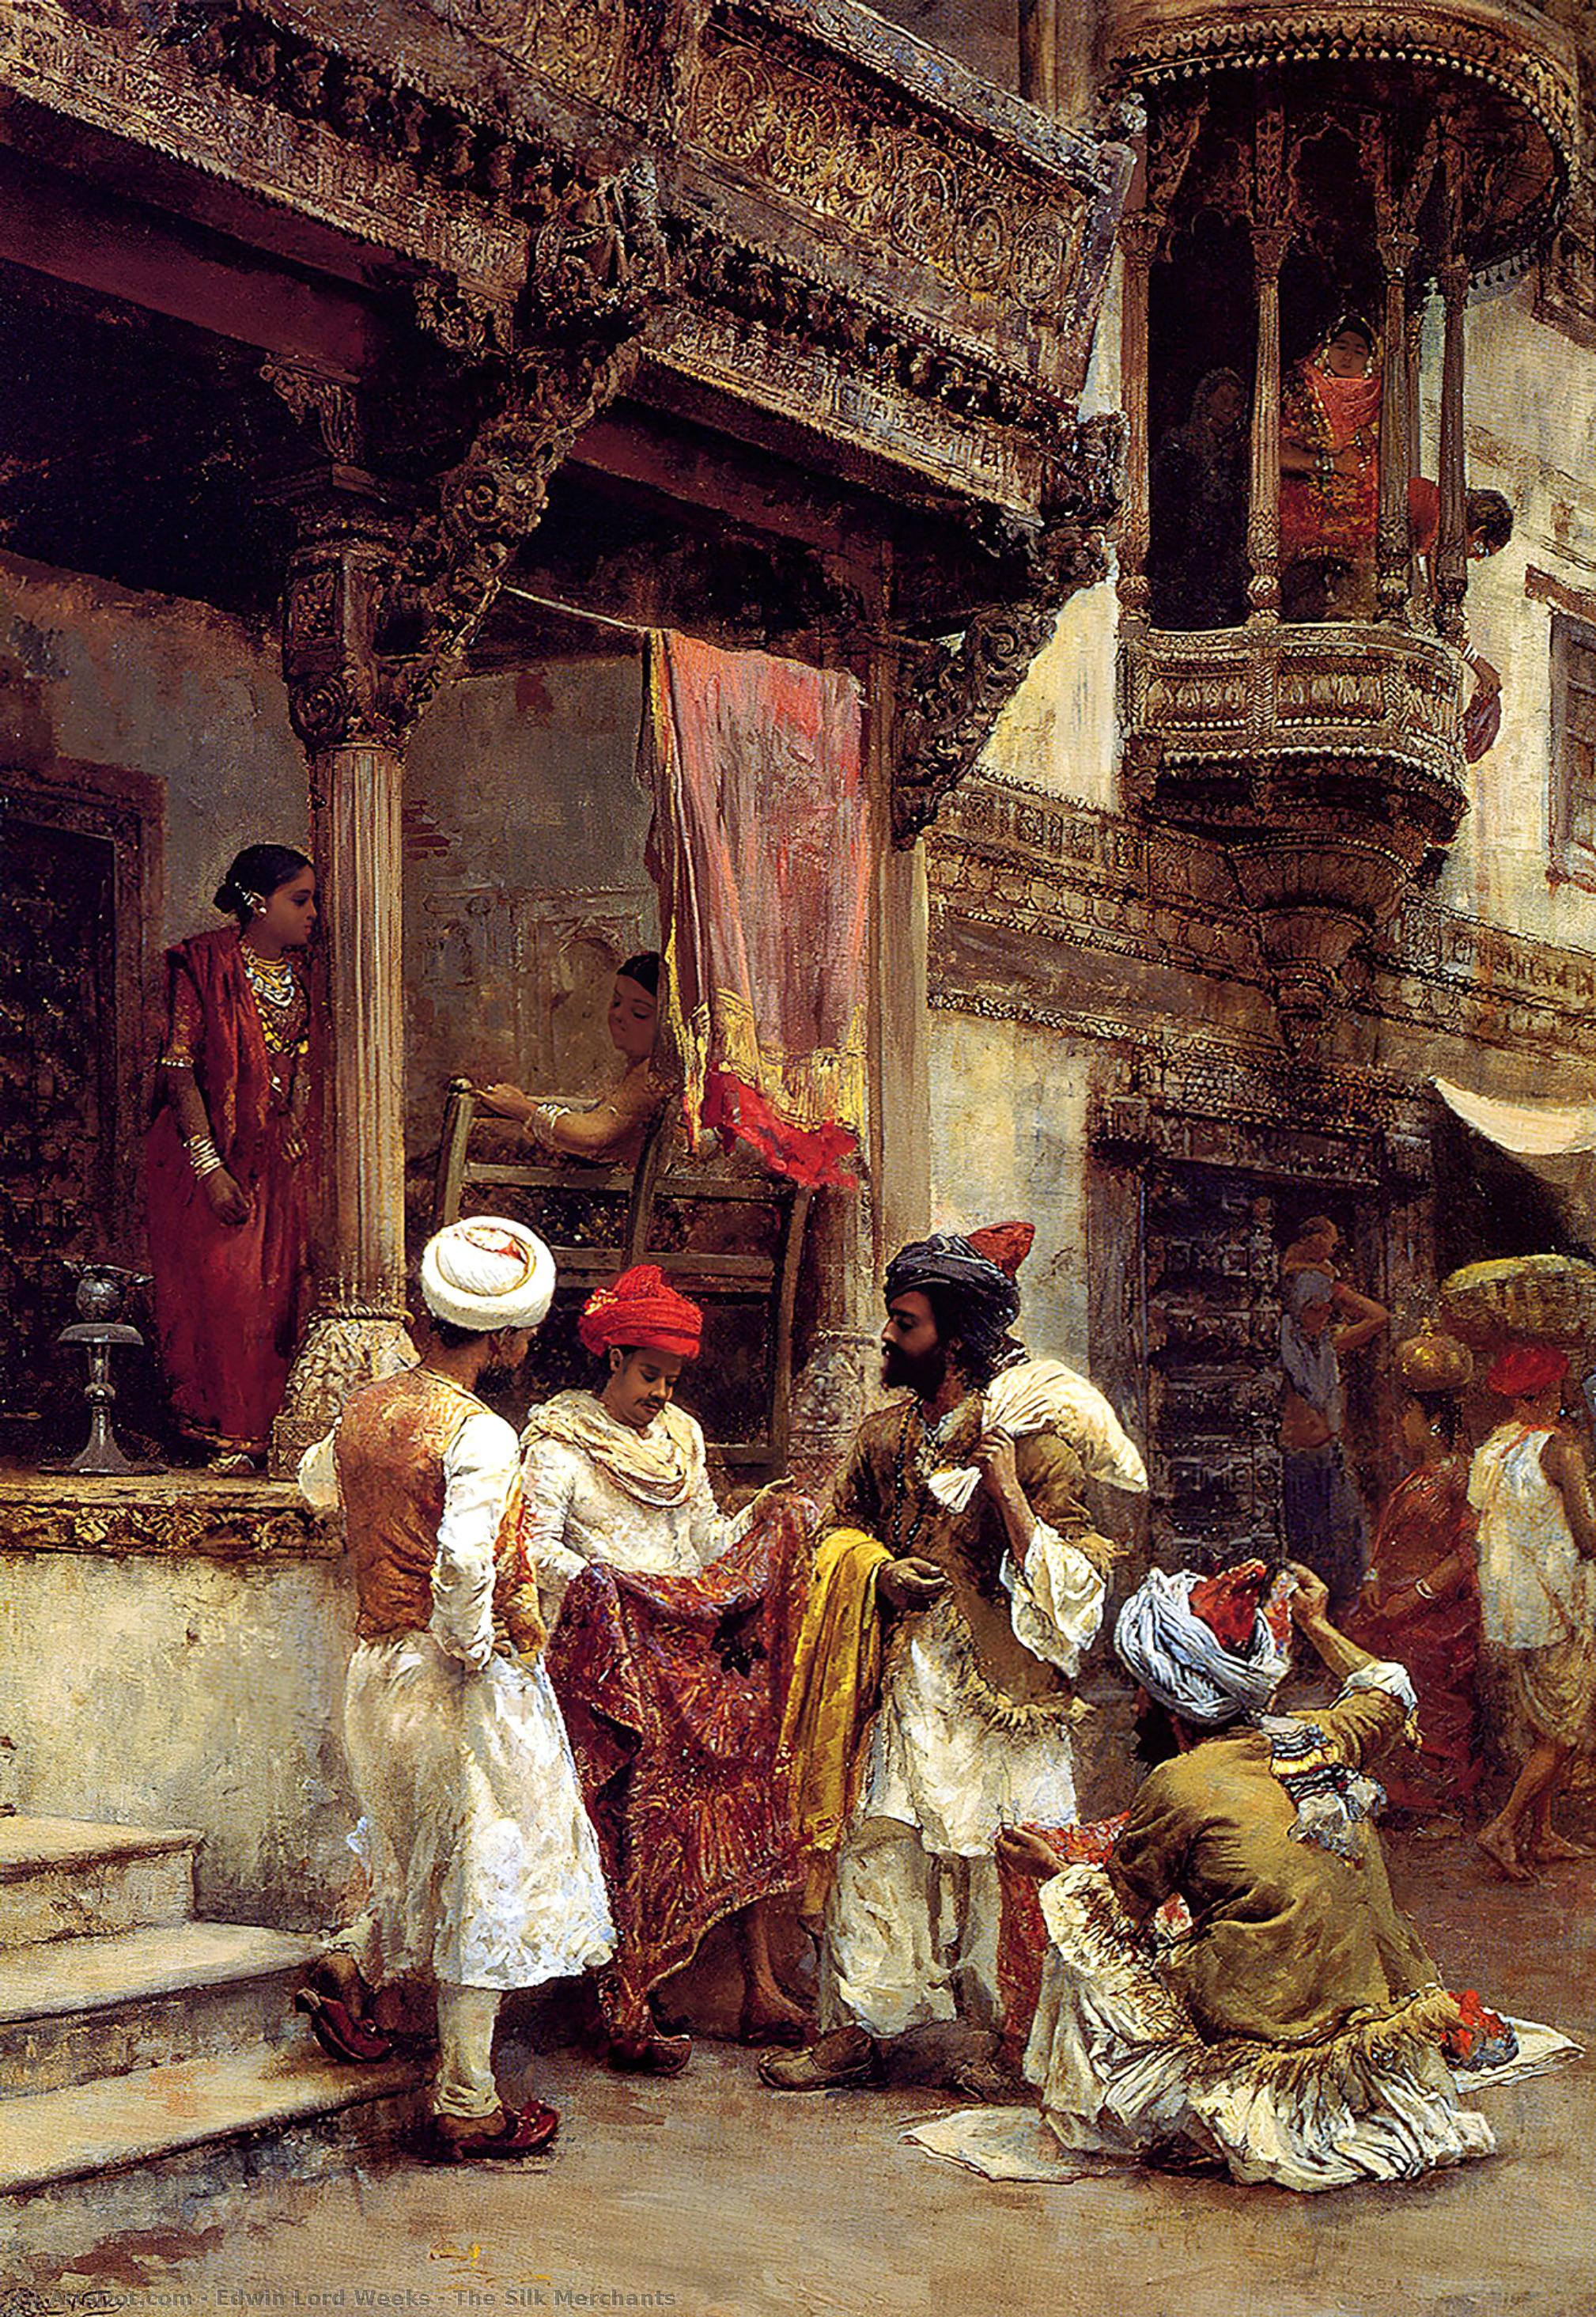 WikiOO.org - Encyclopedia of Fine Arts - Maleri, Artwork Edwin Lord Weeks - The Silk Merchants